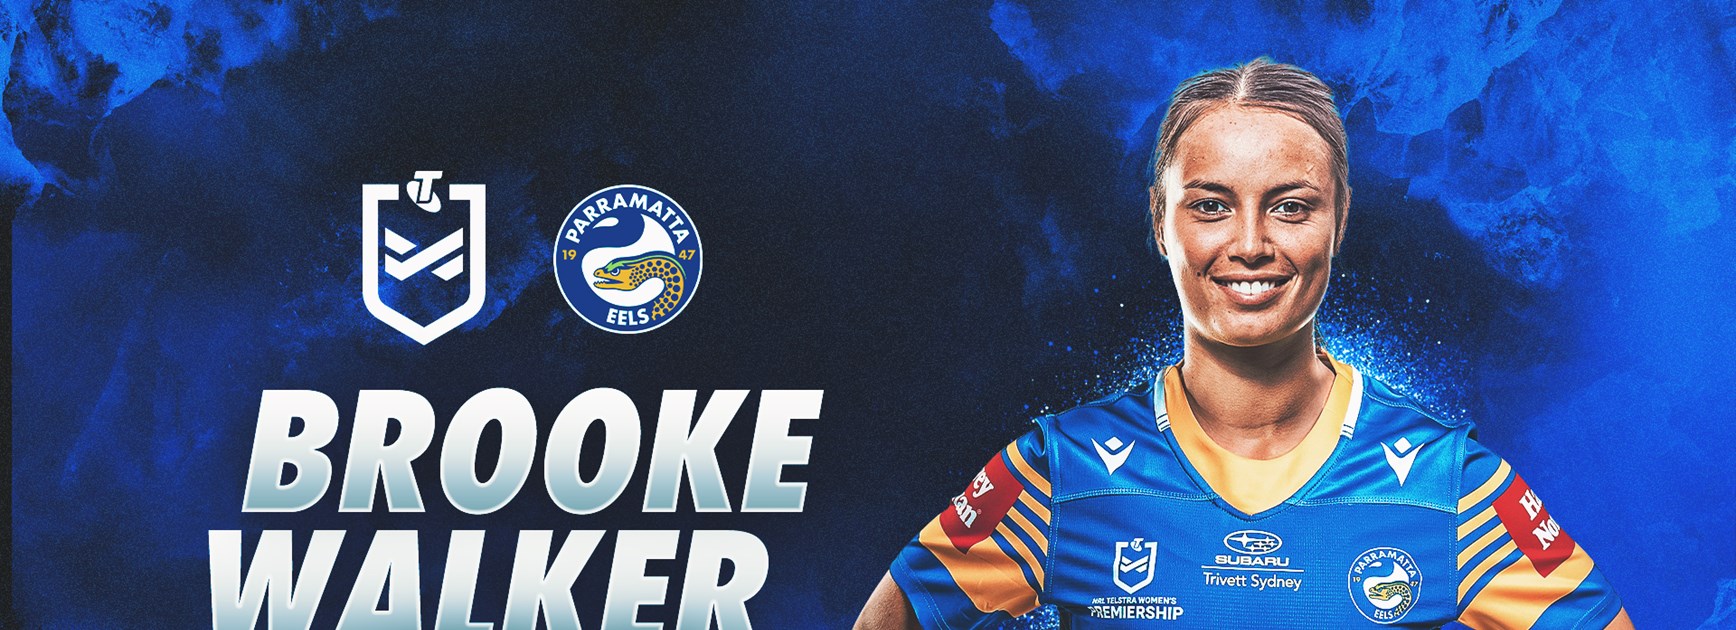 Former AFLW player Brooke Walker signs with Eels